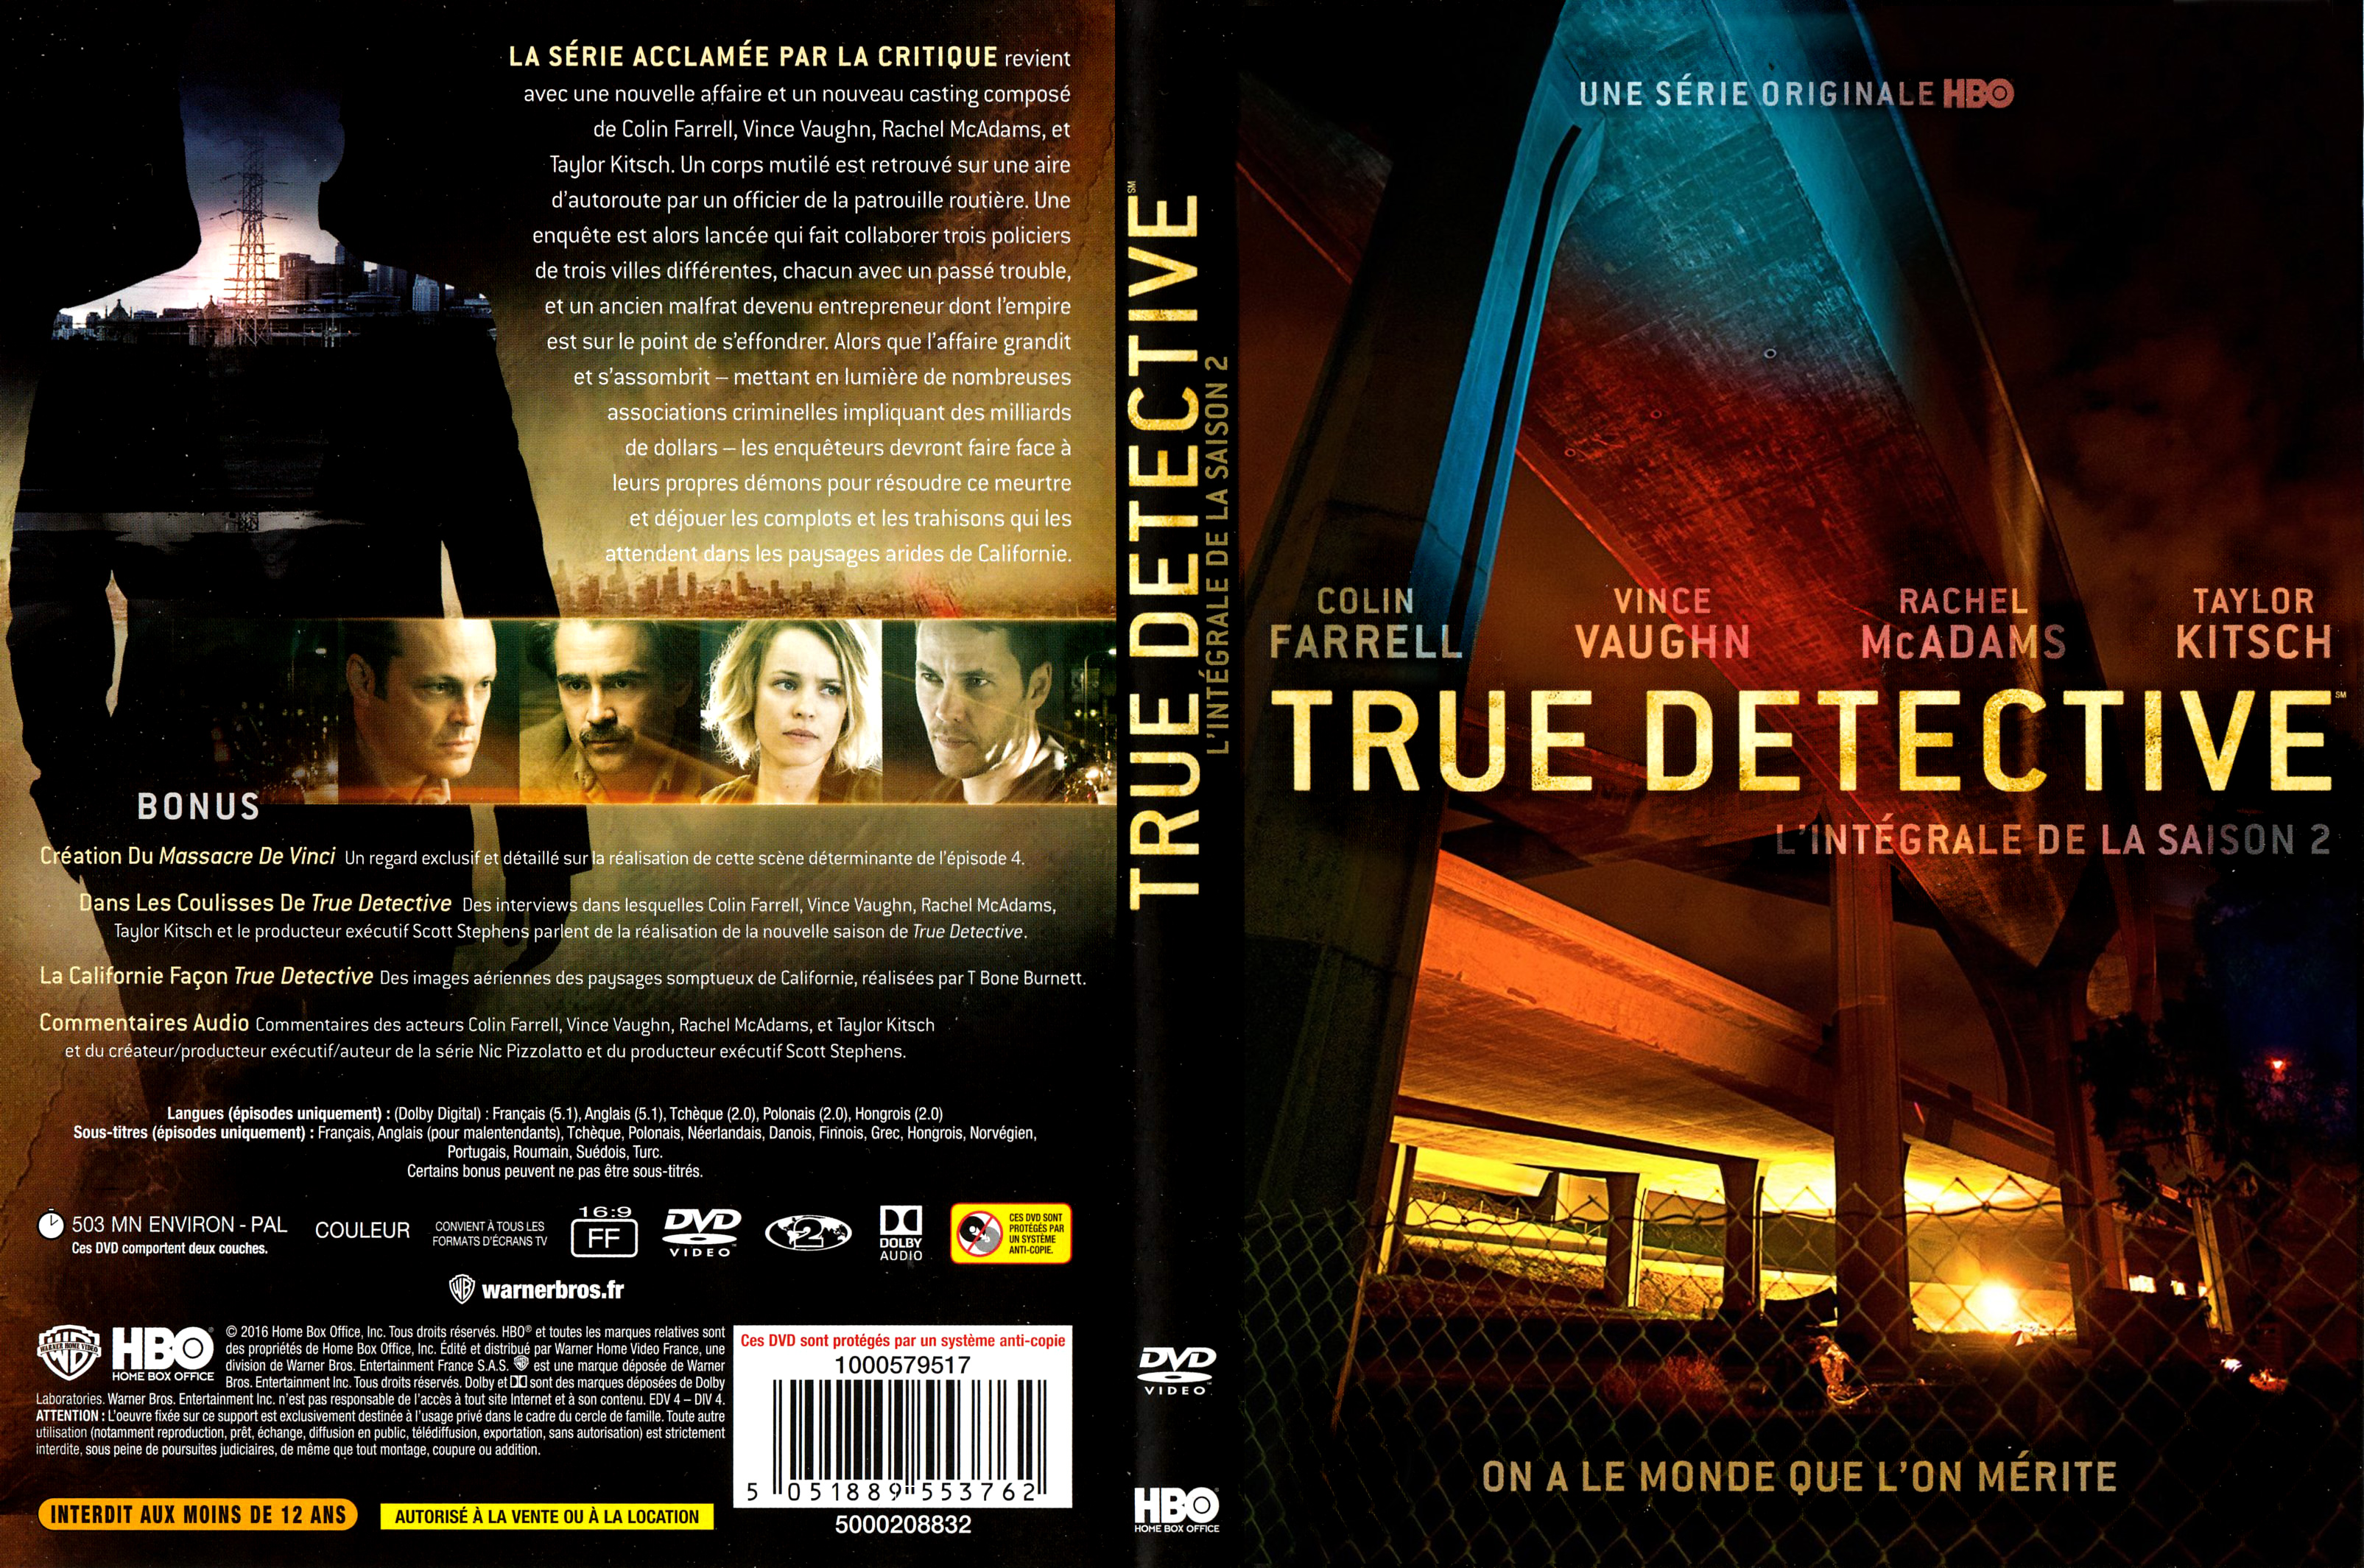 Jaquette DVD True Detective Saison 2